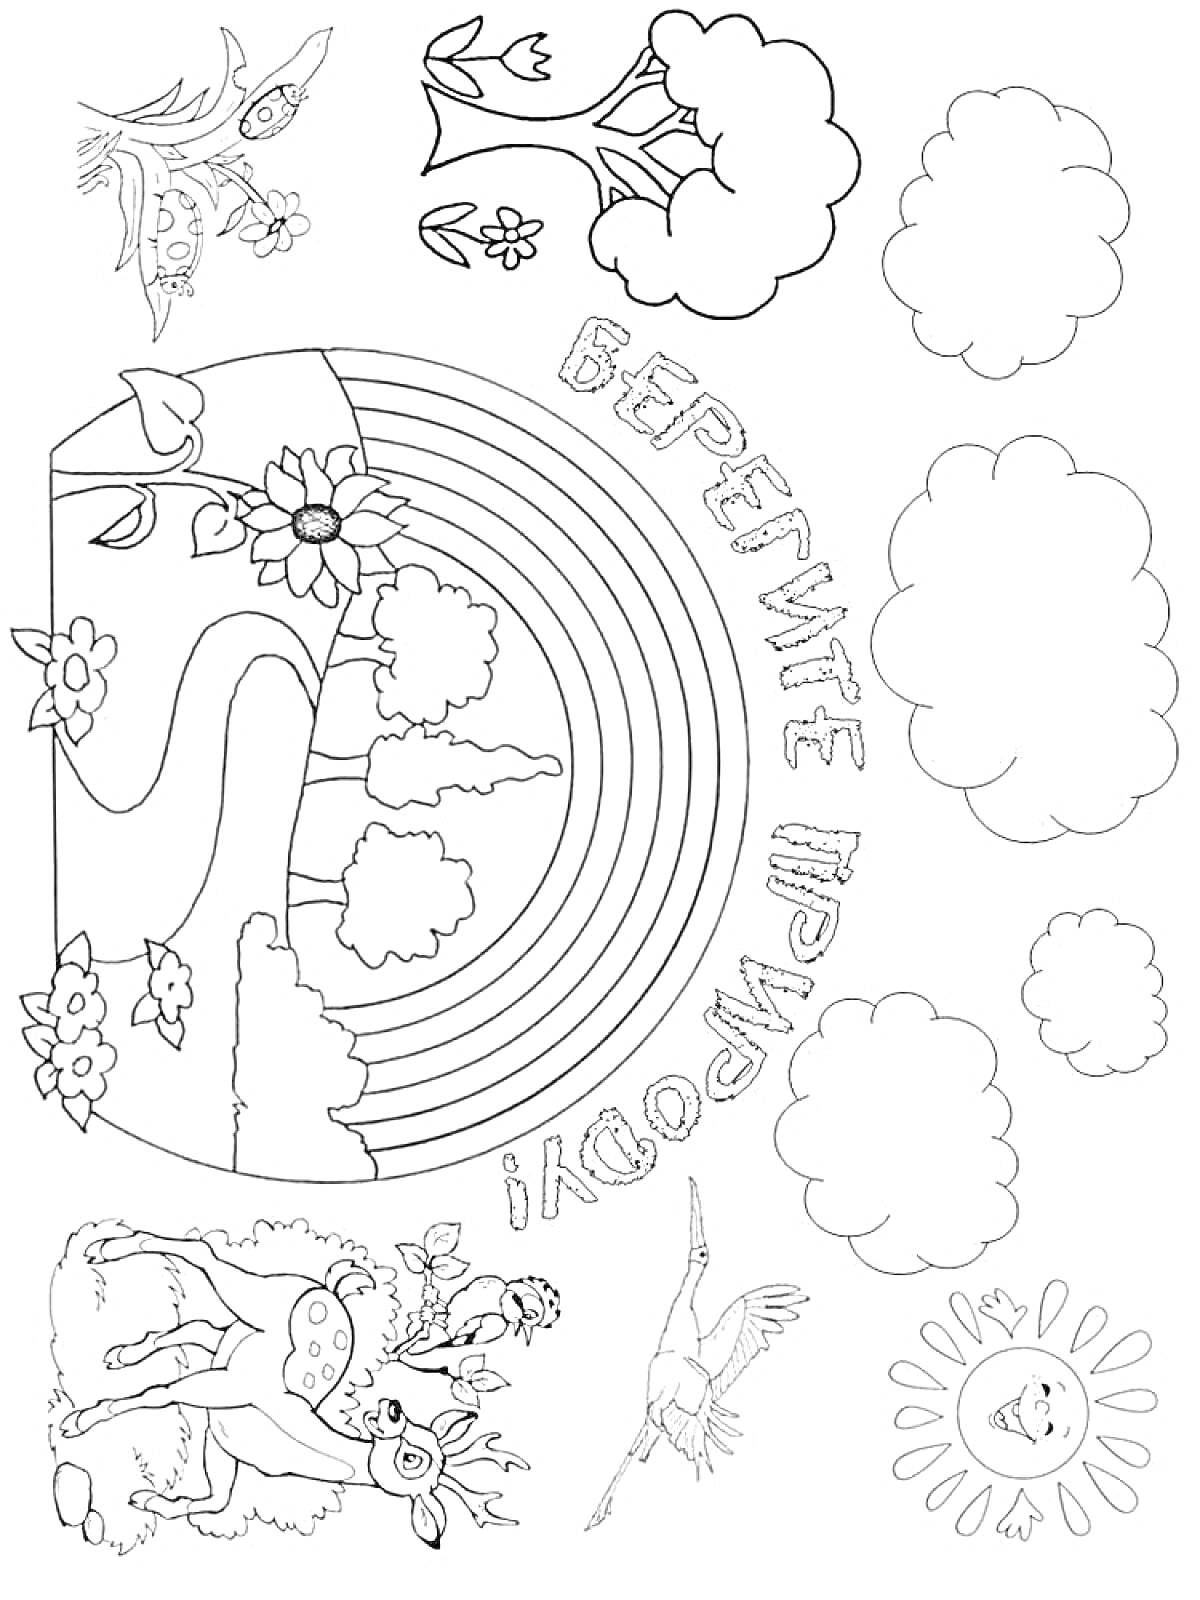 На раскраске изображено: Экология, Природа, Олень, Цветы, Деревья, Облака, Птица, Солнце, Защита природы, Радуги